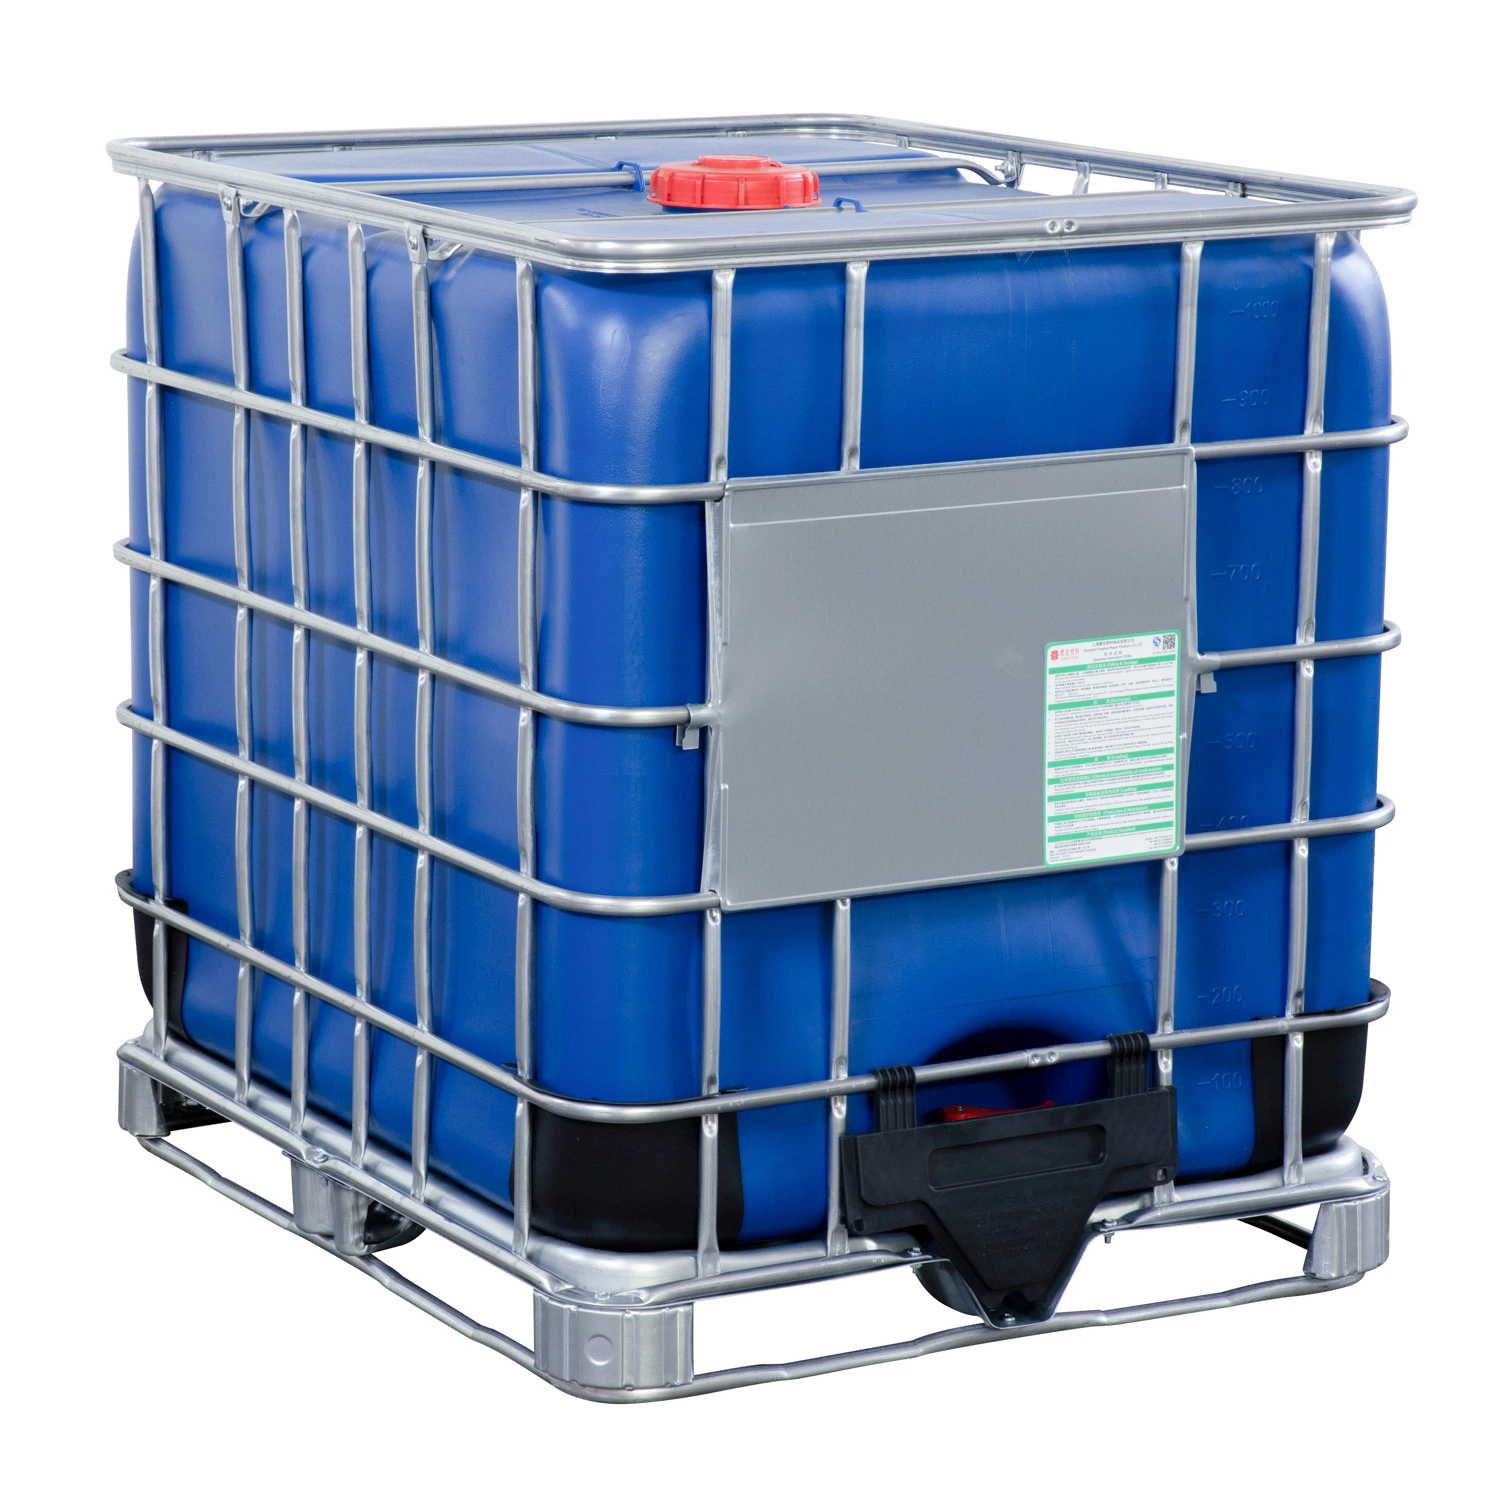 Réservoir bleu de 1000 litres pour le stockage de liquide chimique.